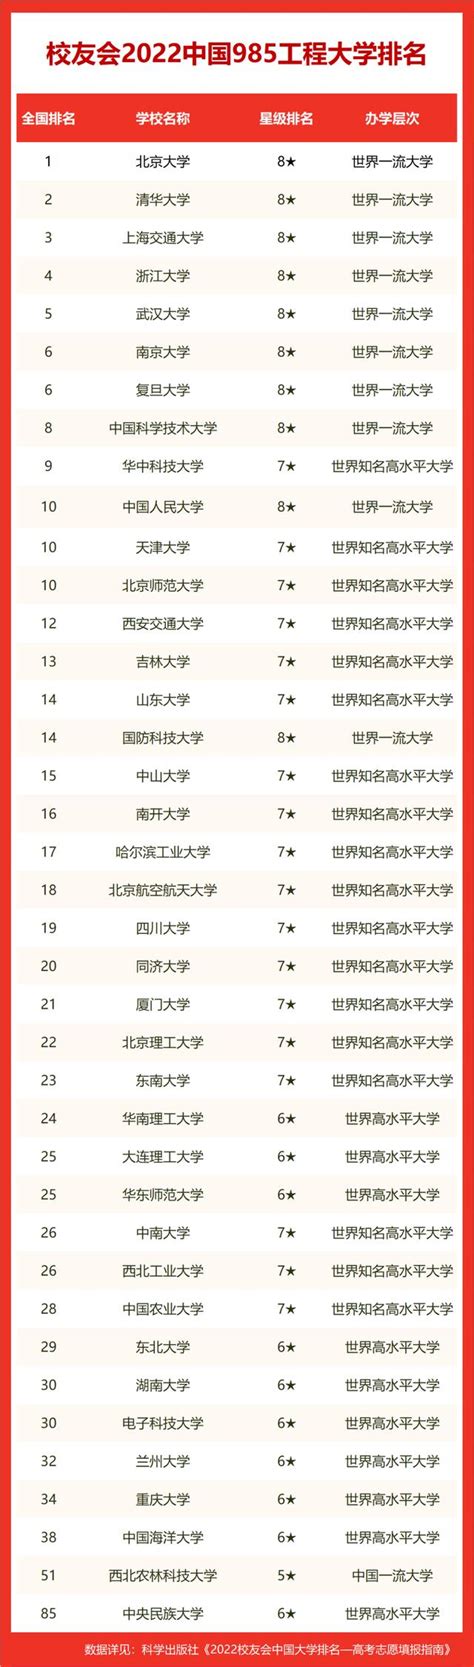 中国最顶尖的十所大学_高考热门教育学类专业推荐,教育学类好就业就业(3)_中国排行网